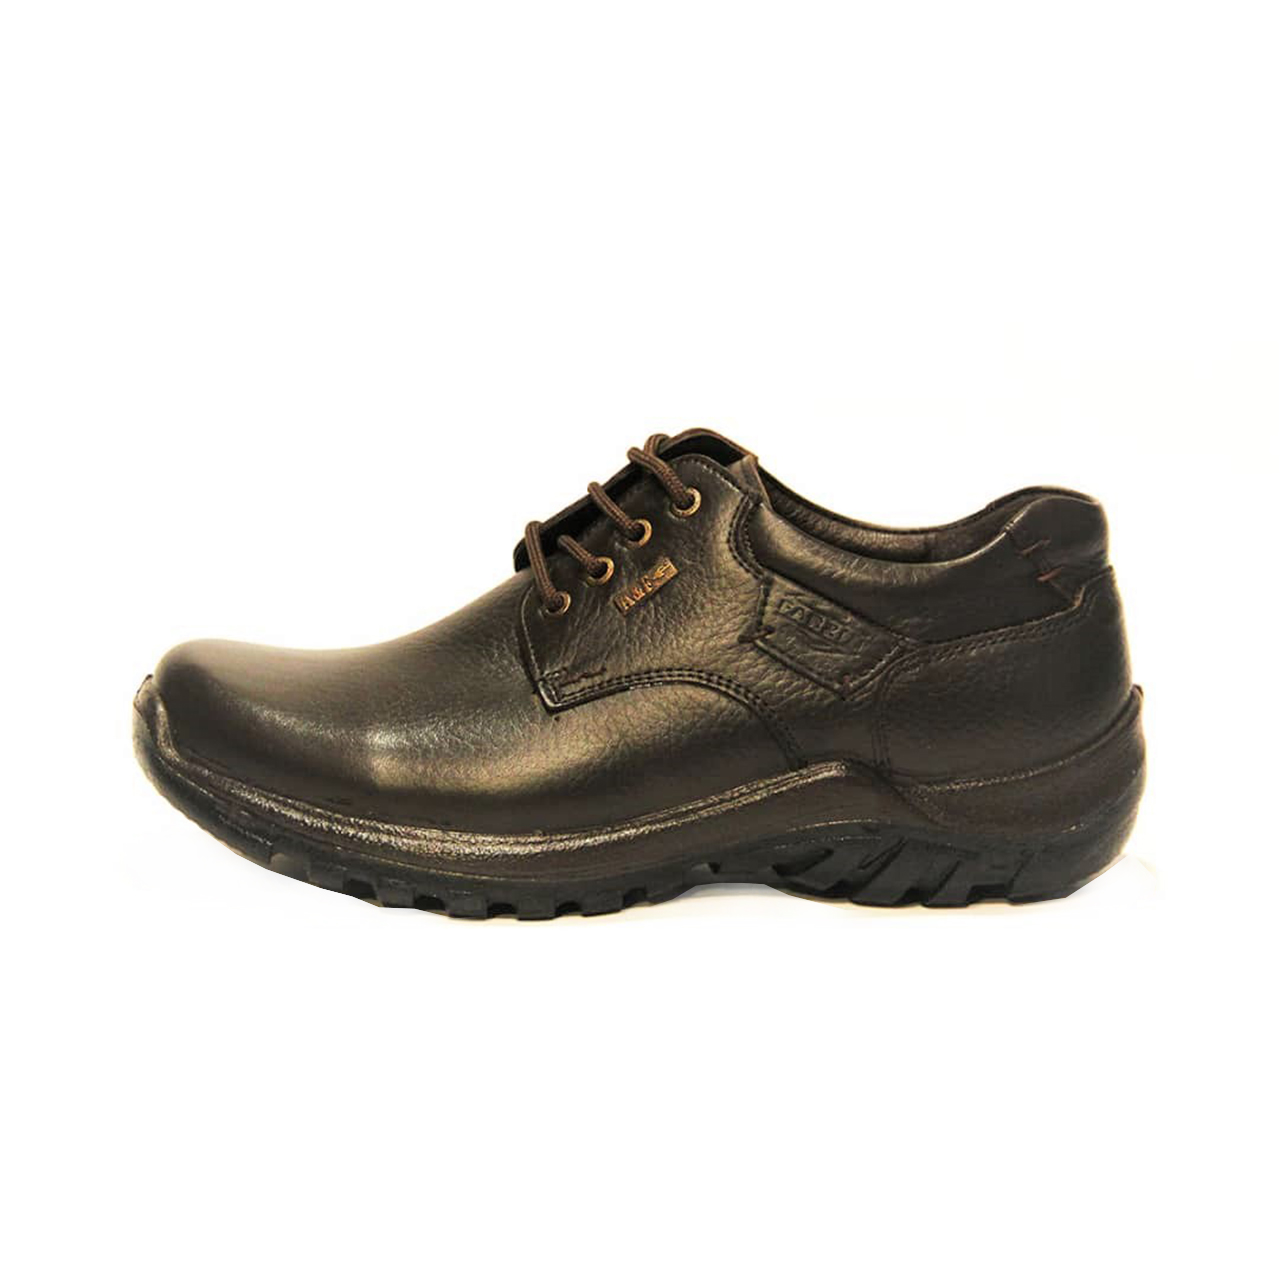 کفش روزمره مردانه فرزین کد cbb011 رنگ قهوه ای -  - 1